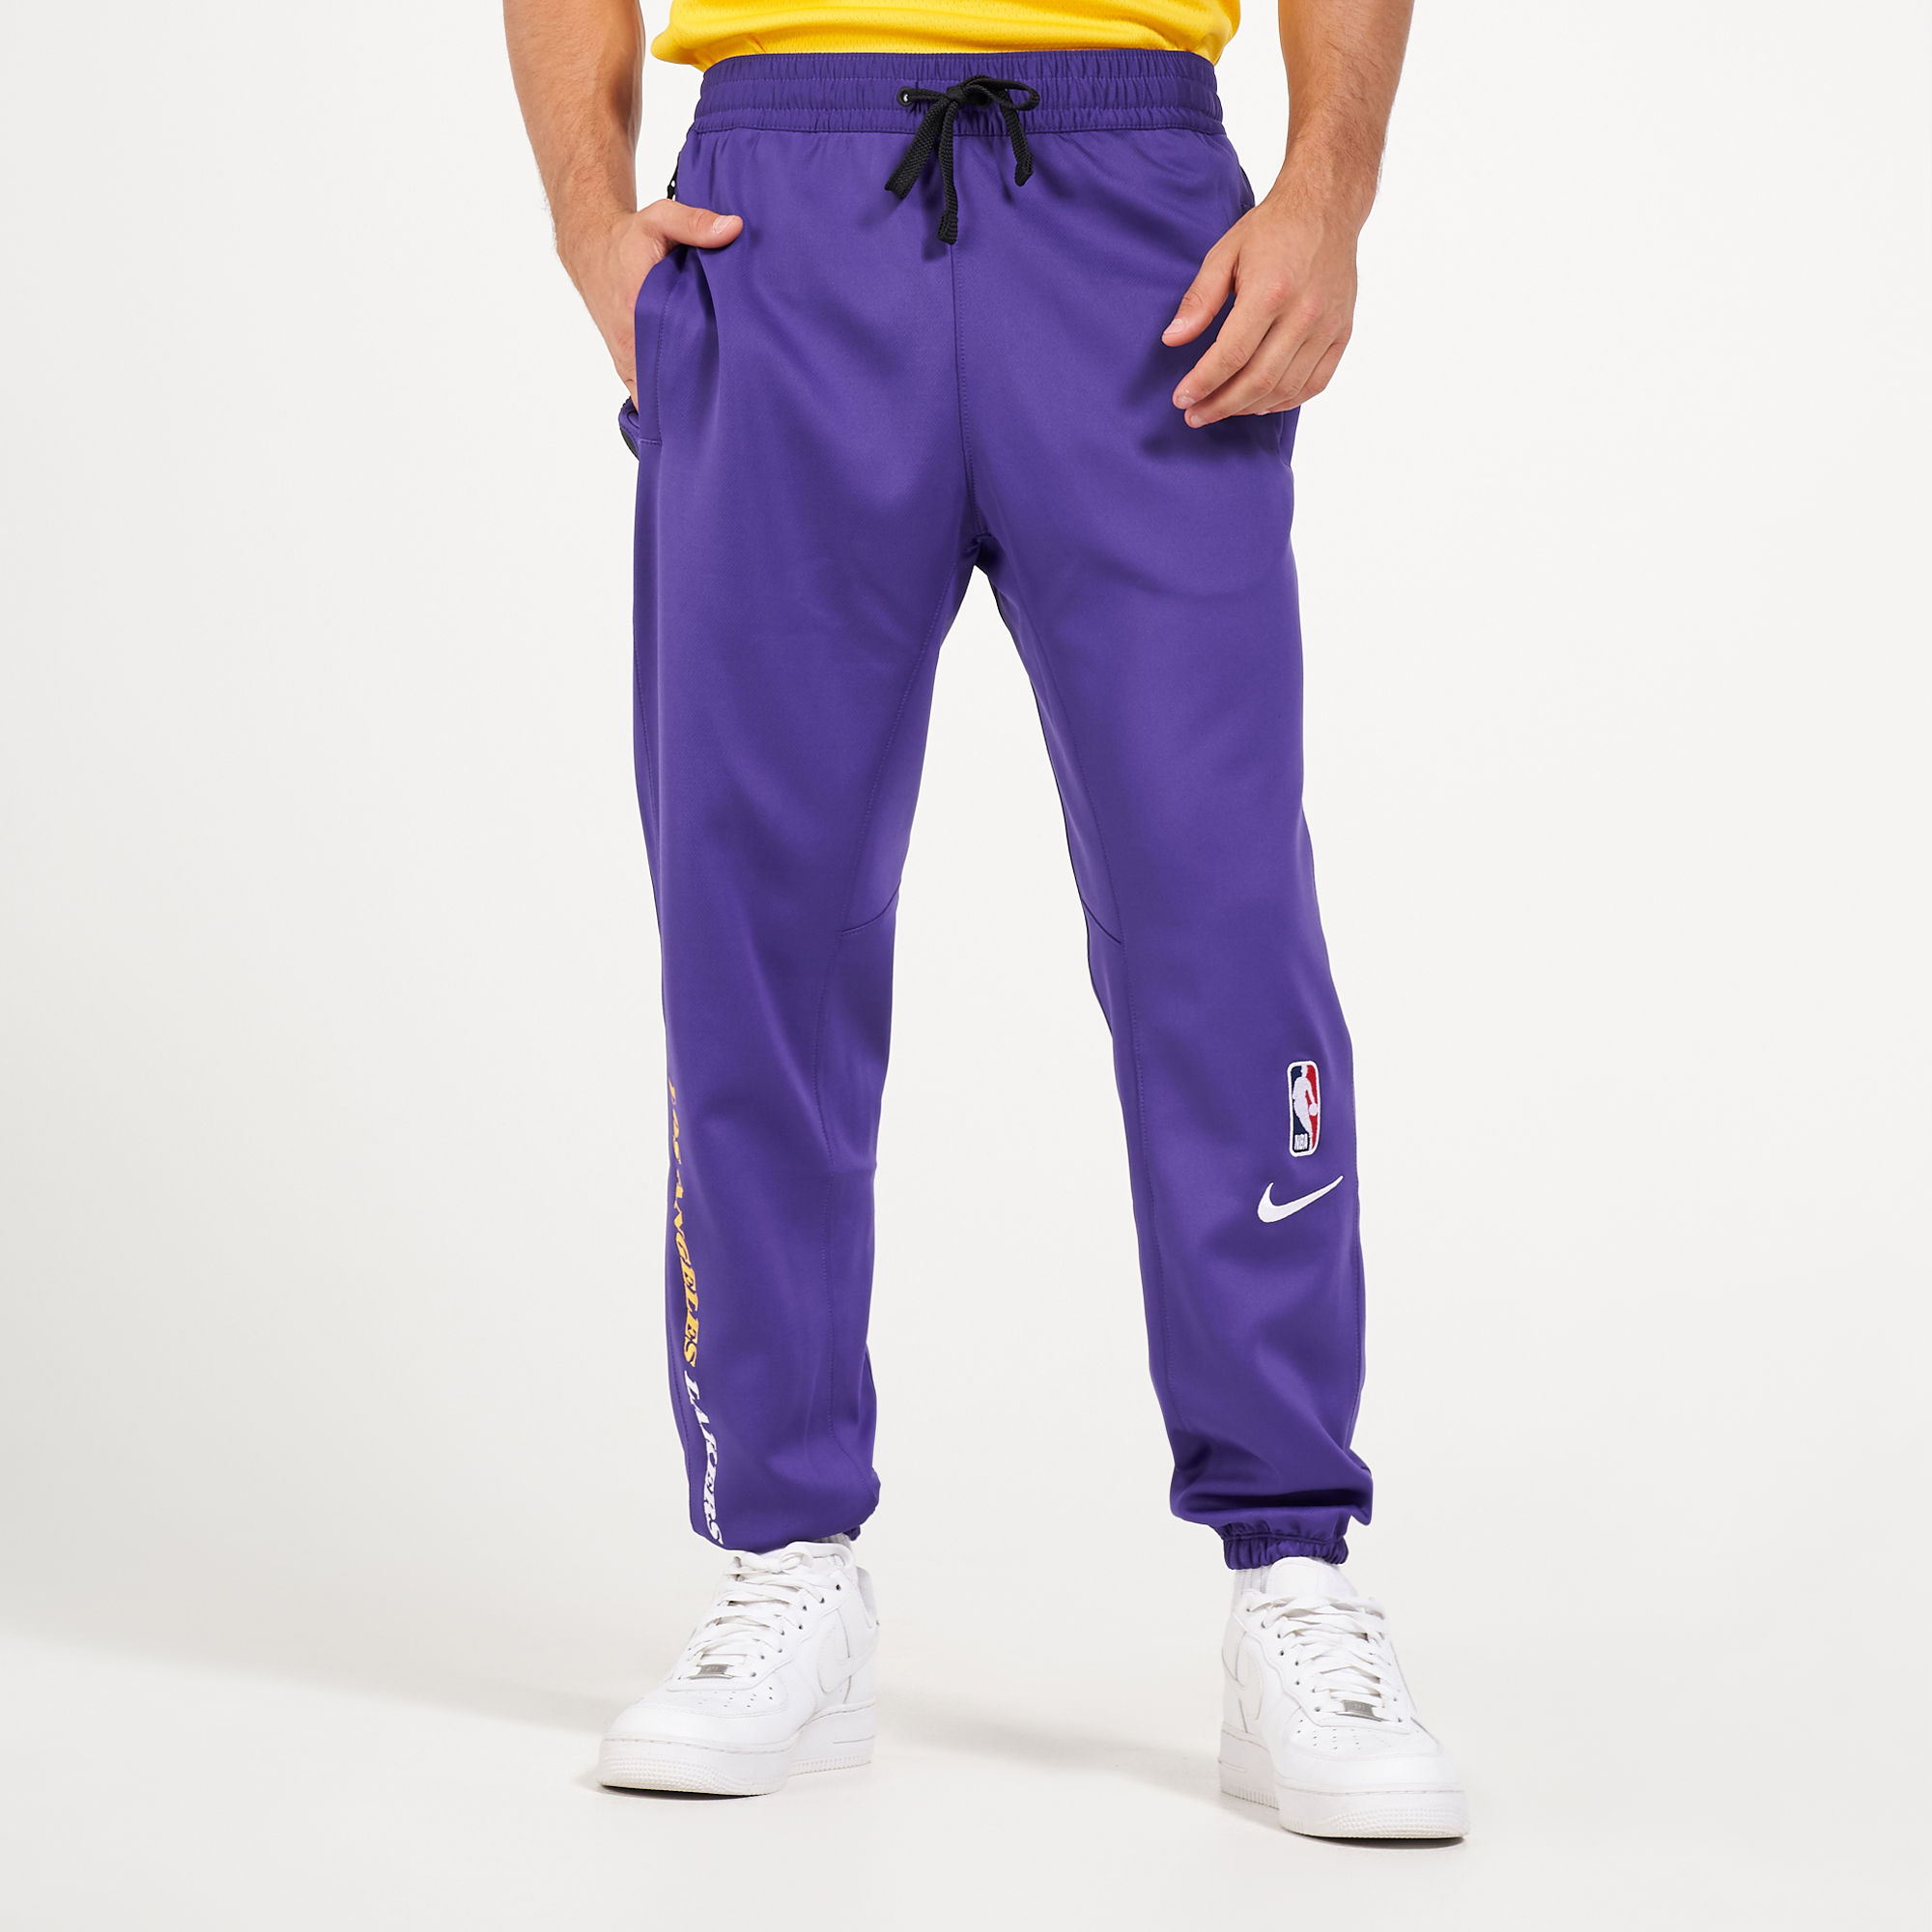 nike showtime pants purple